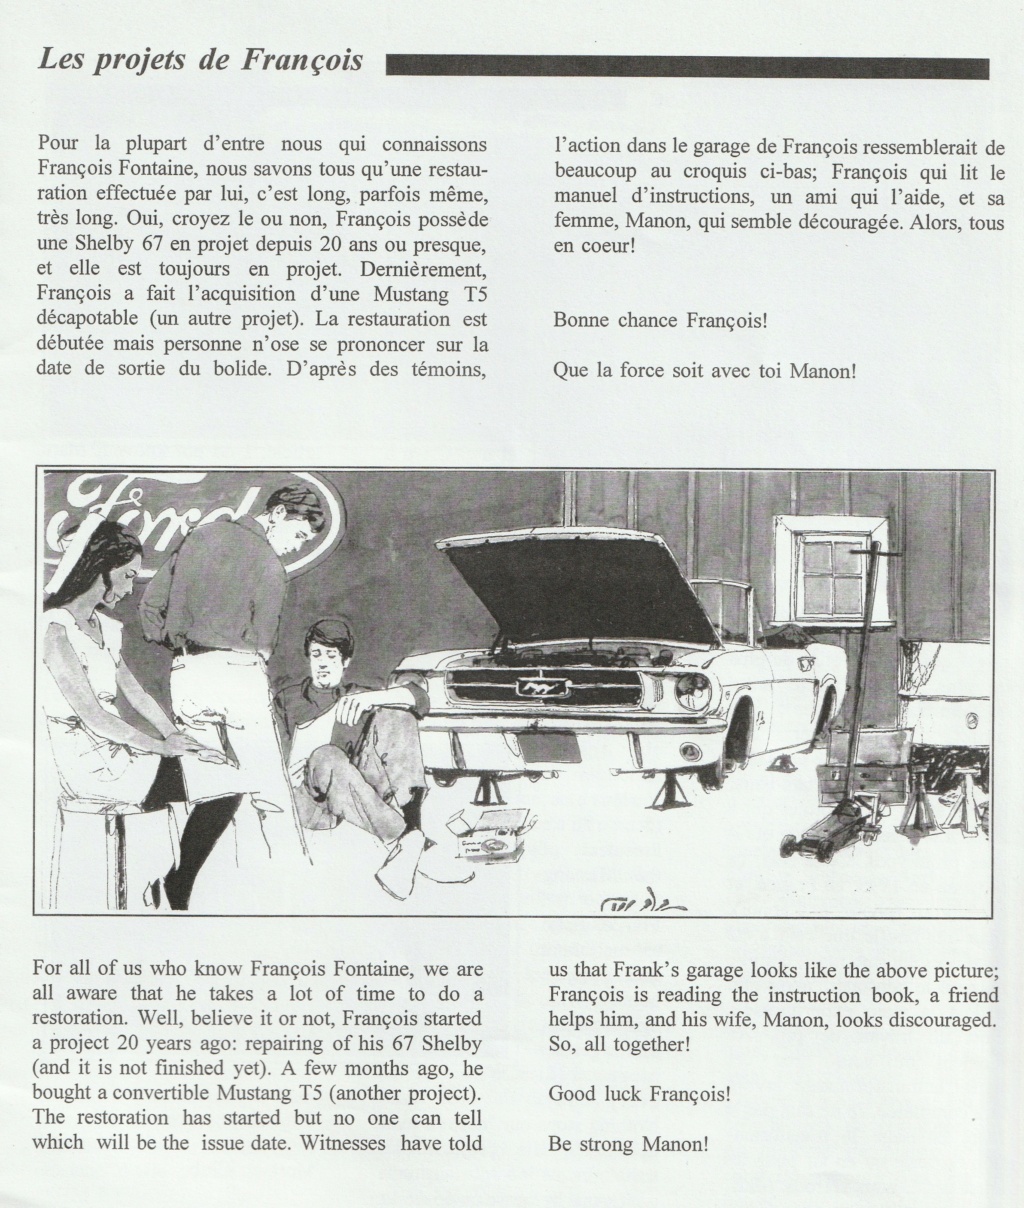 Montréal Mustang dans le temps! 1981 à aujourd'hui (Histoire en photos) - Page 8 Img_2347